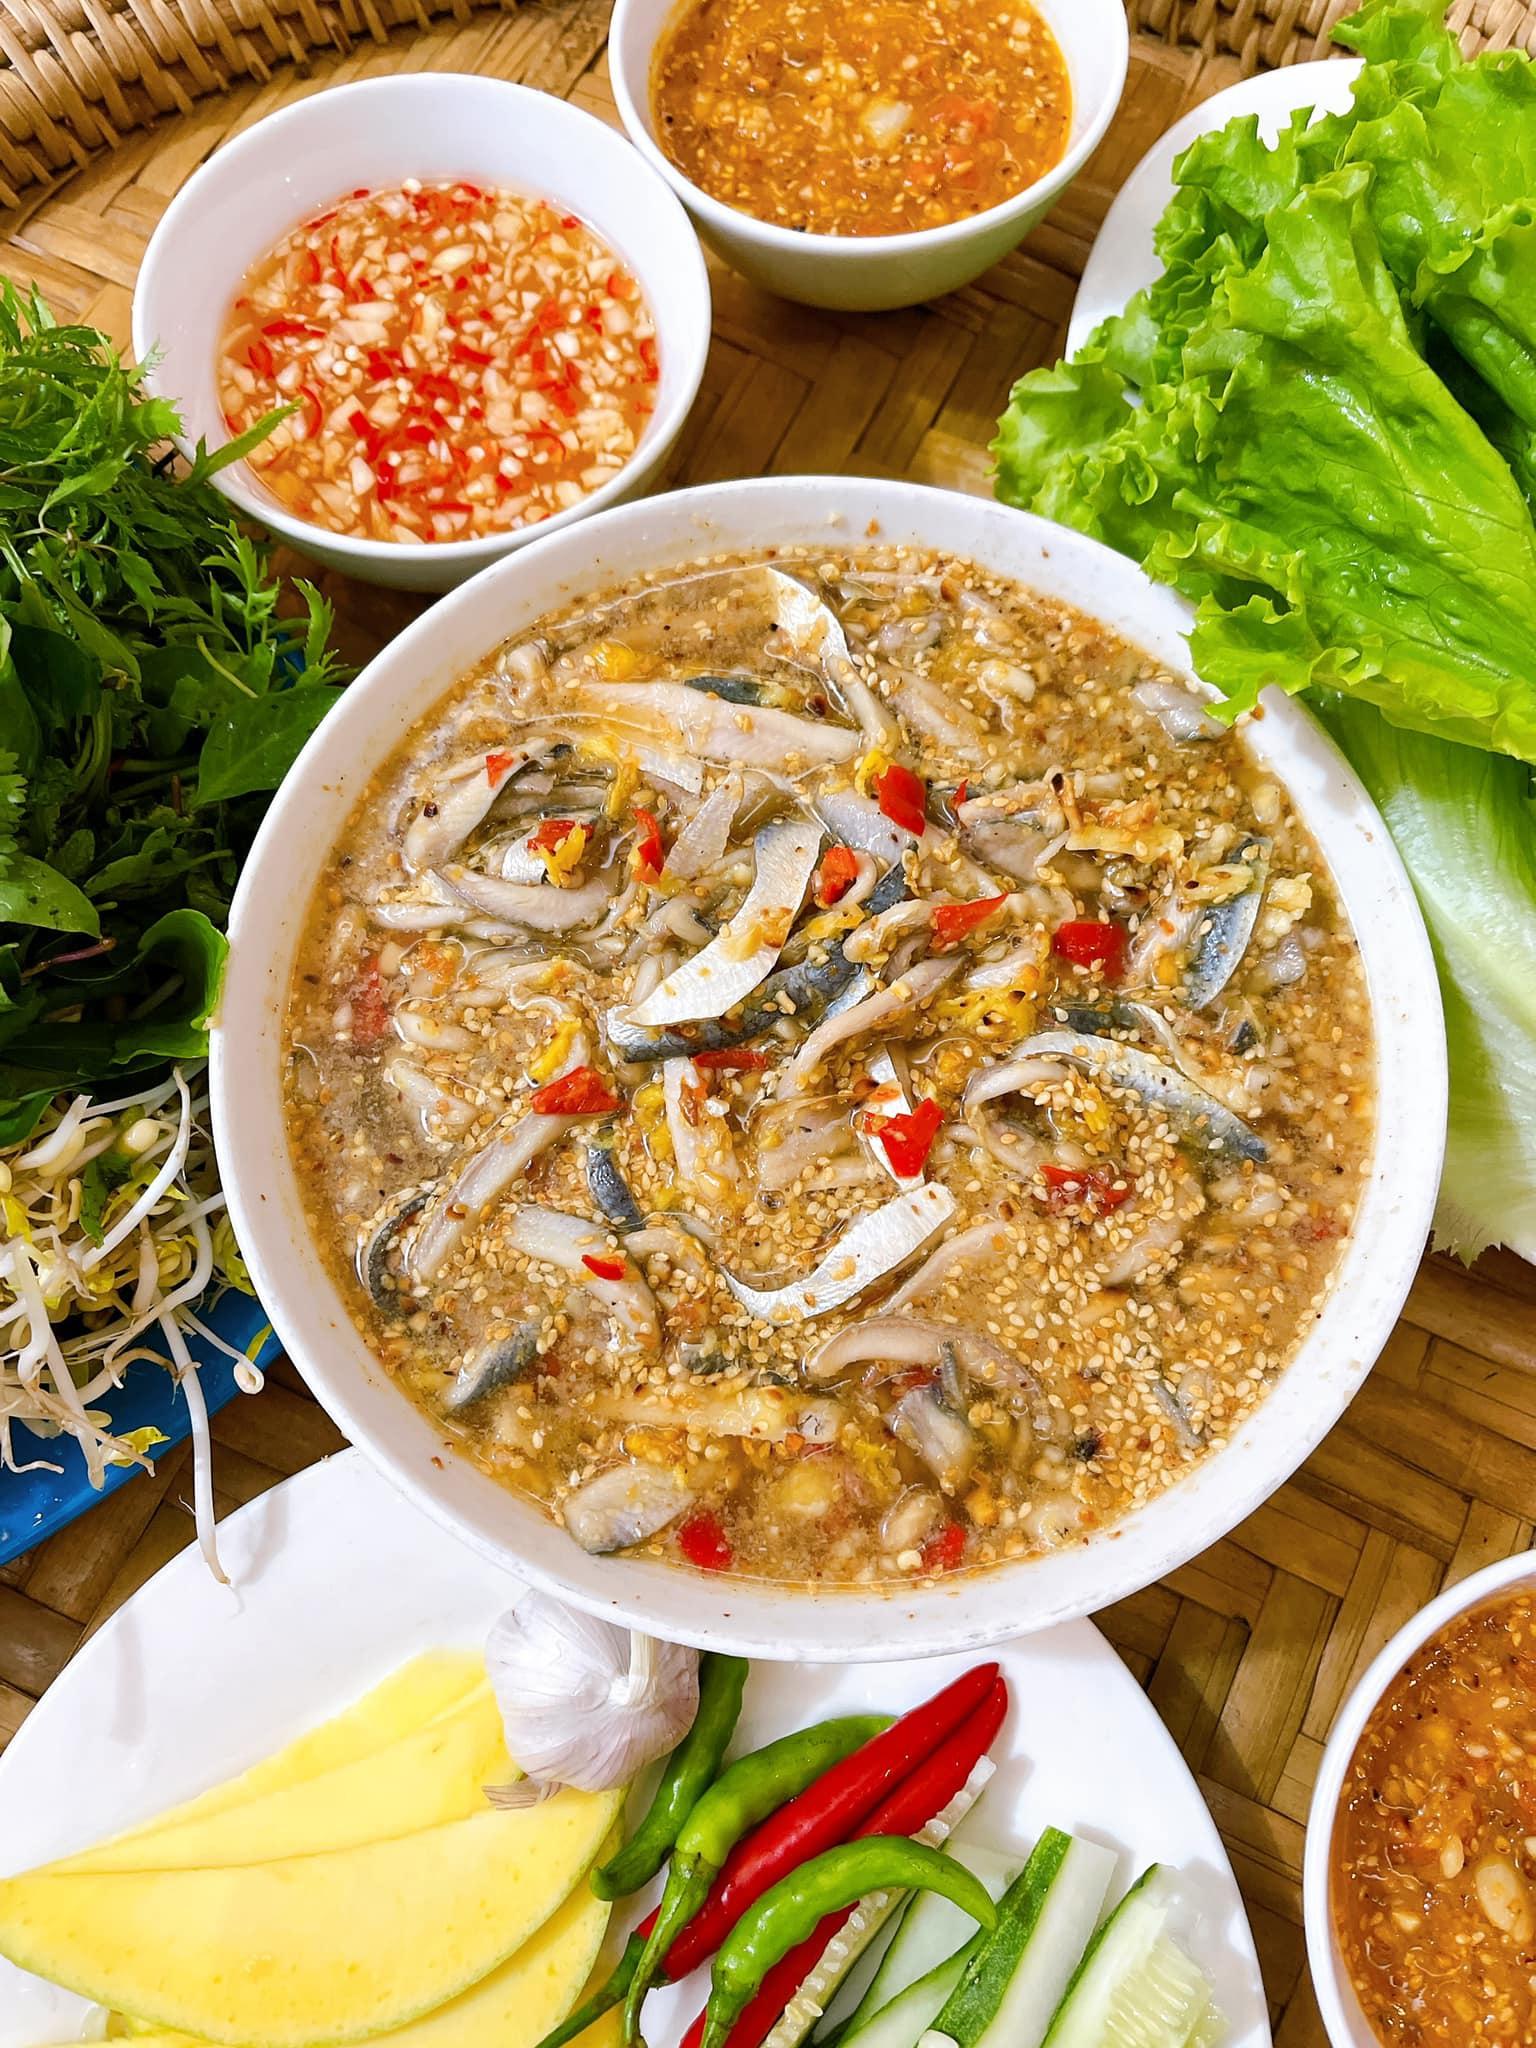 Đặc sản cá trích "ăn tươi nuốt sống" nổi tiếng ở Đà Nẵng - 1